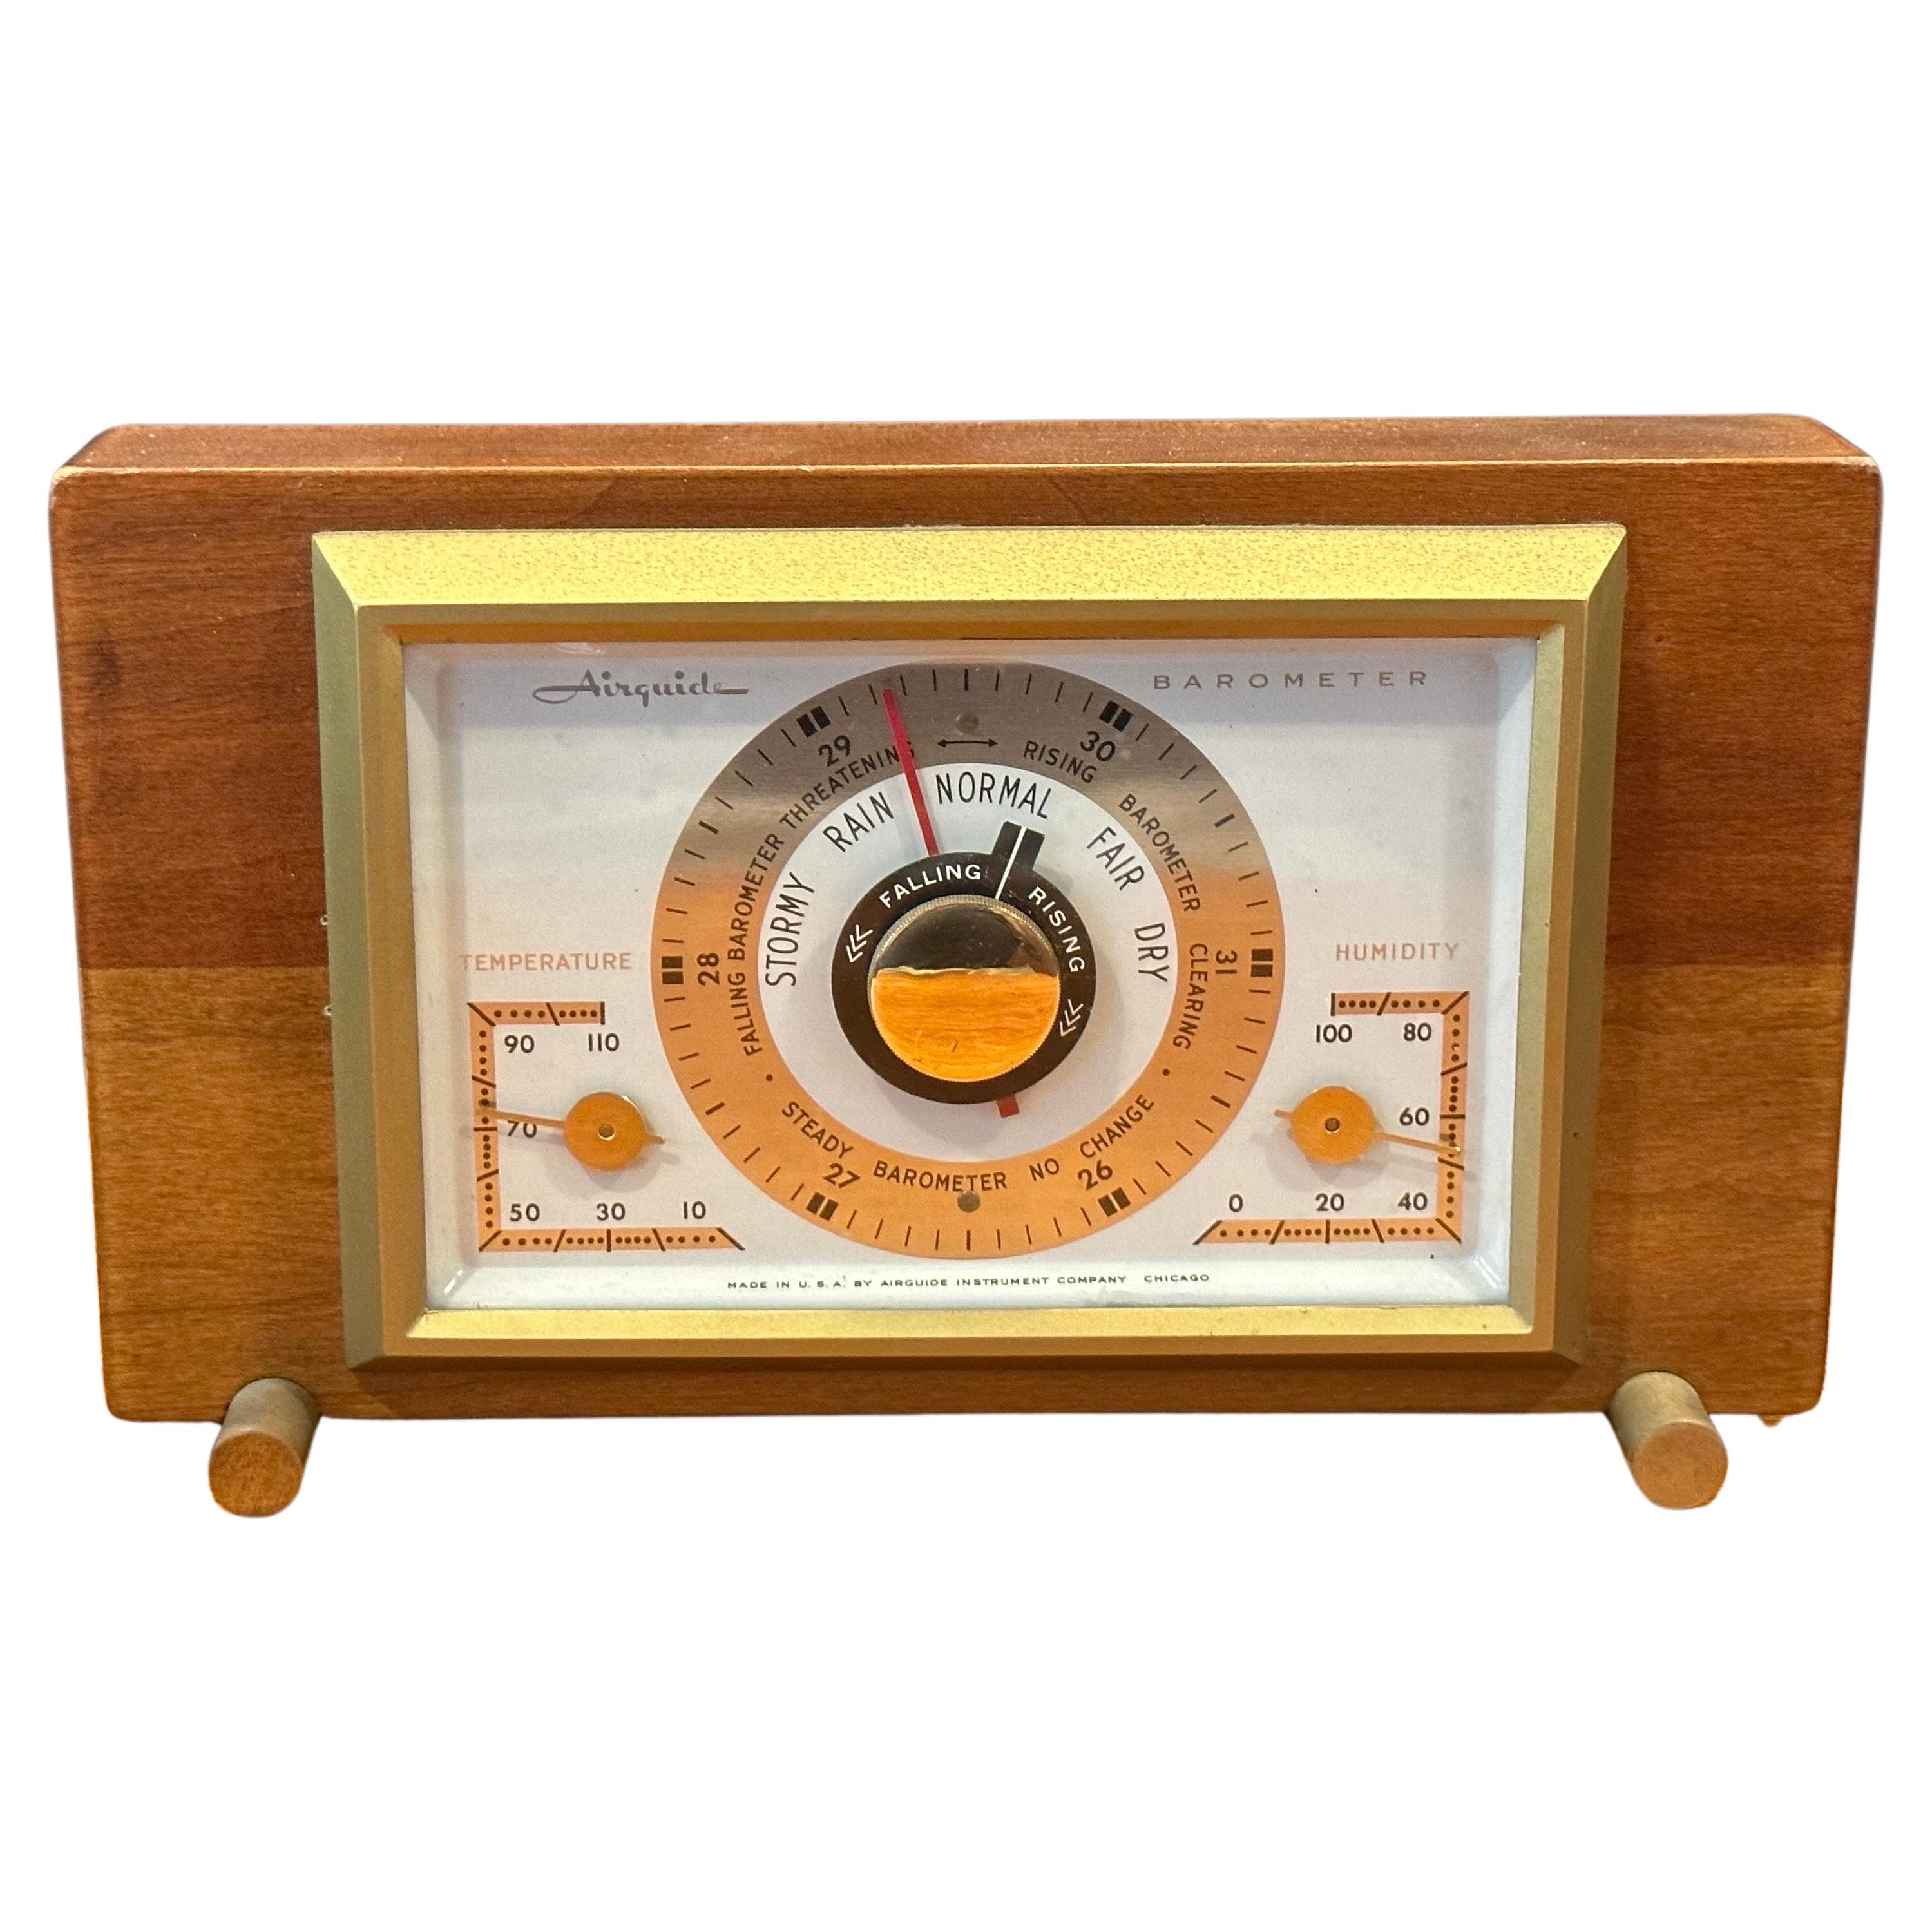 Desktop Barometer / Wetterstation von Airguide Instrument Company